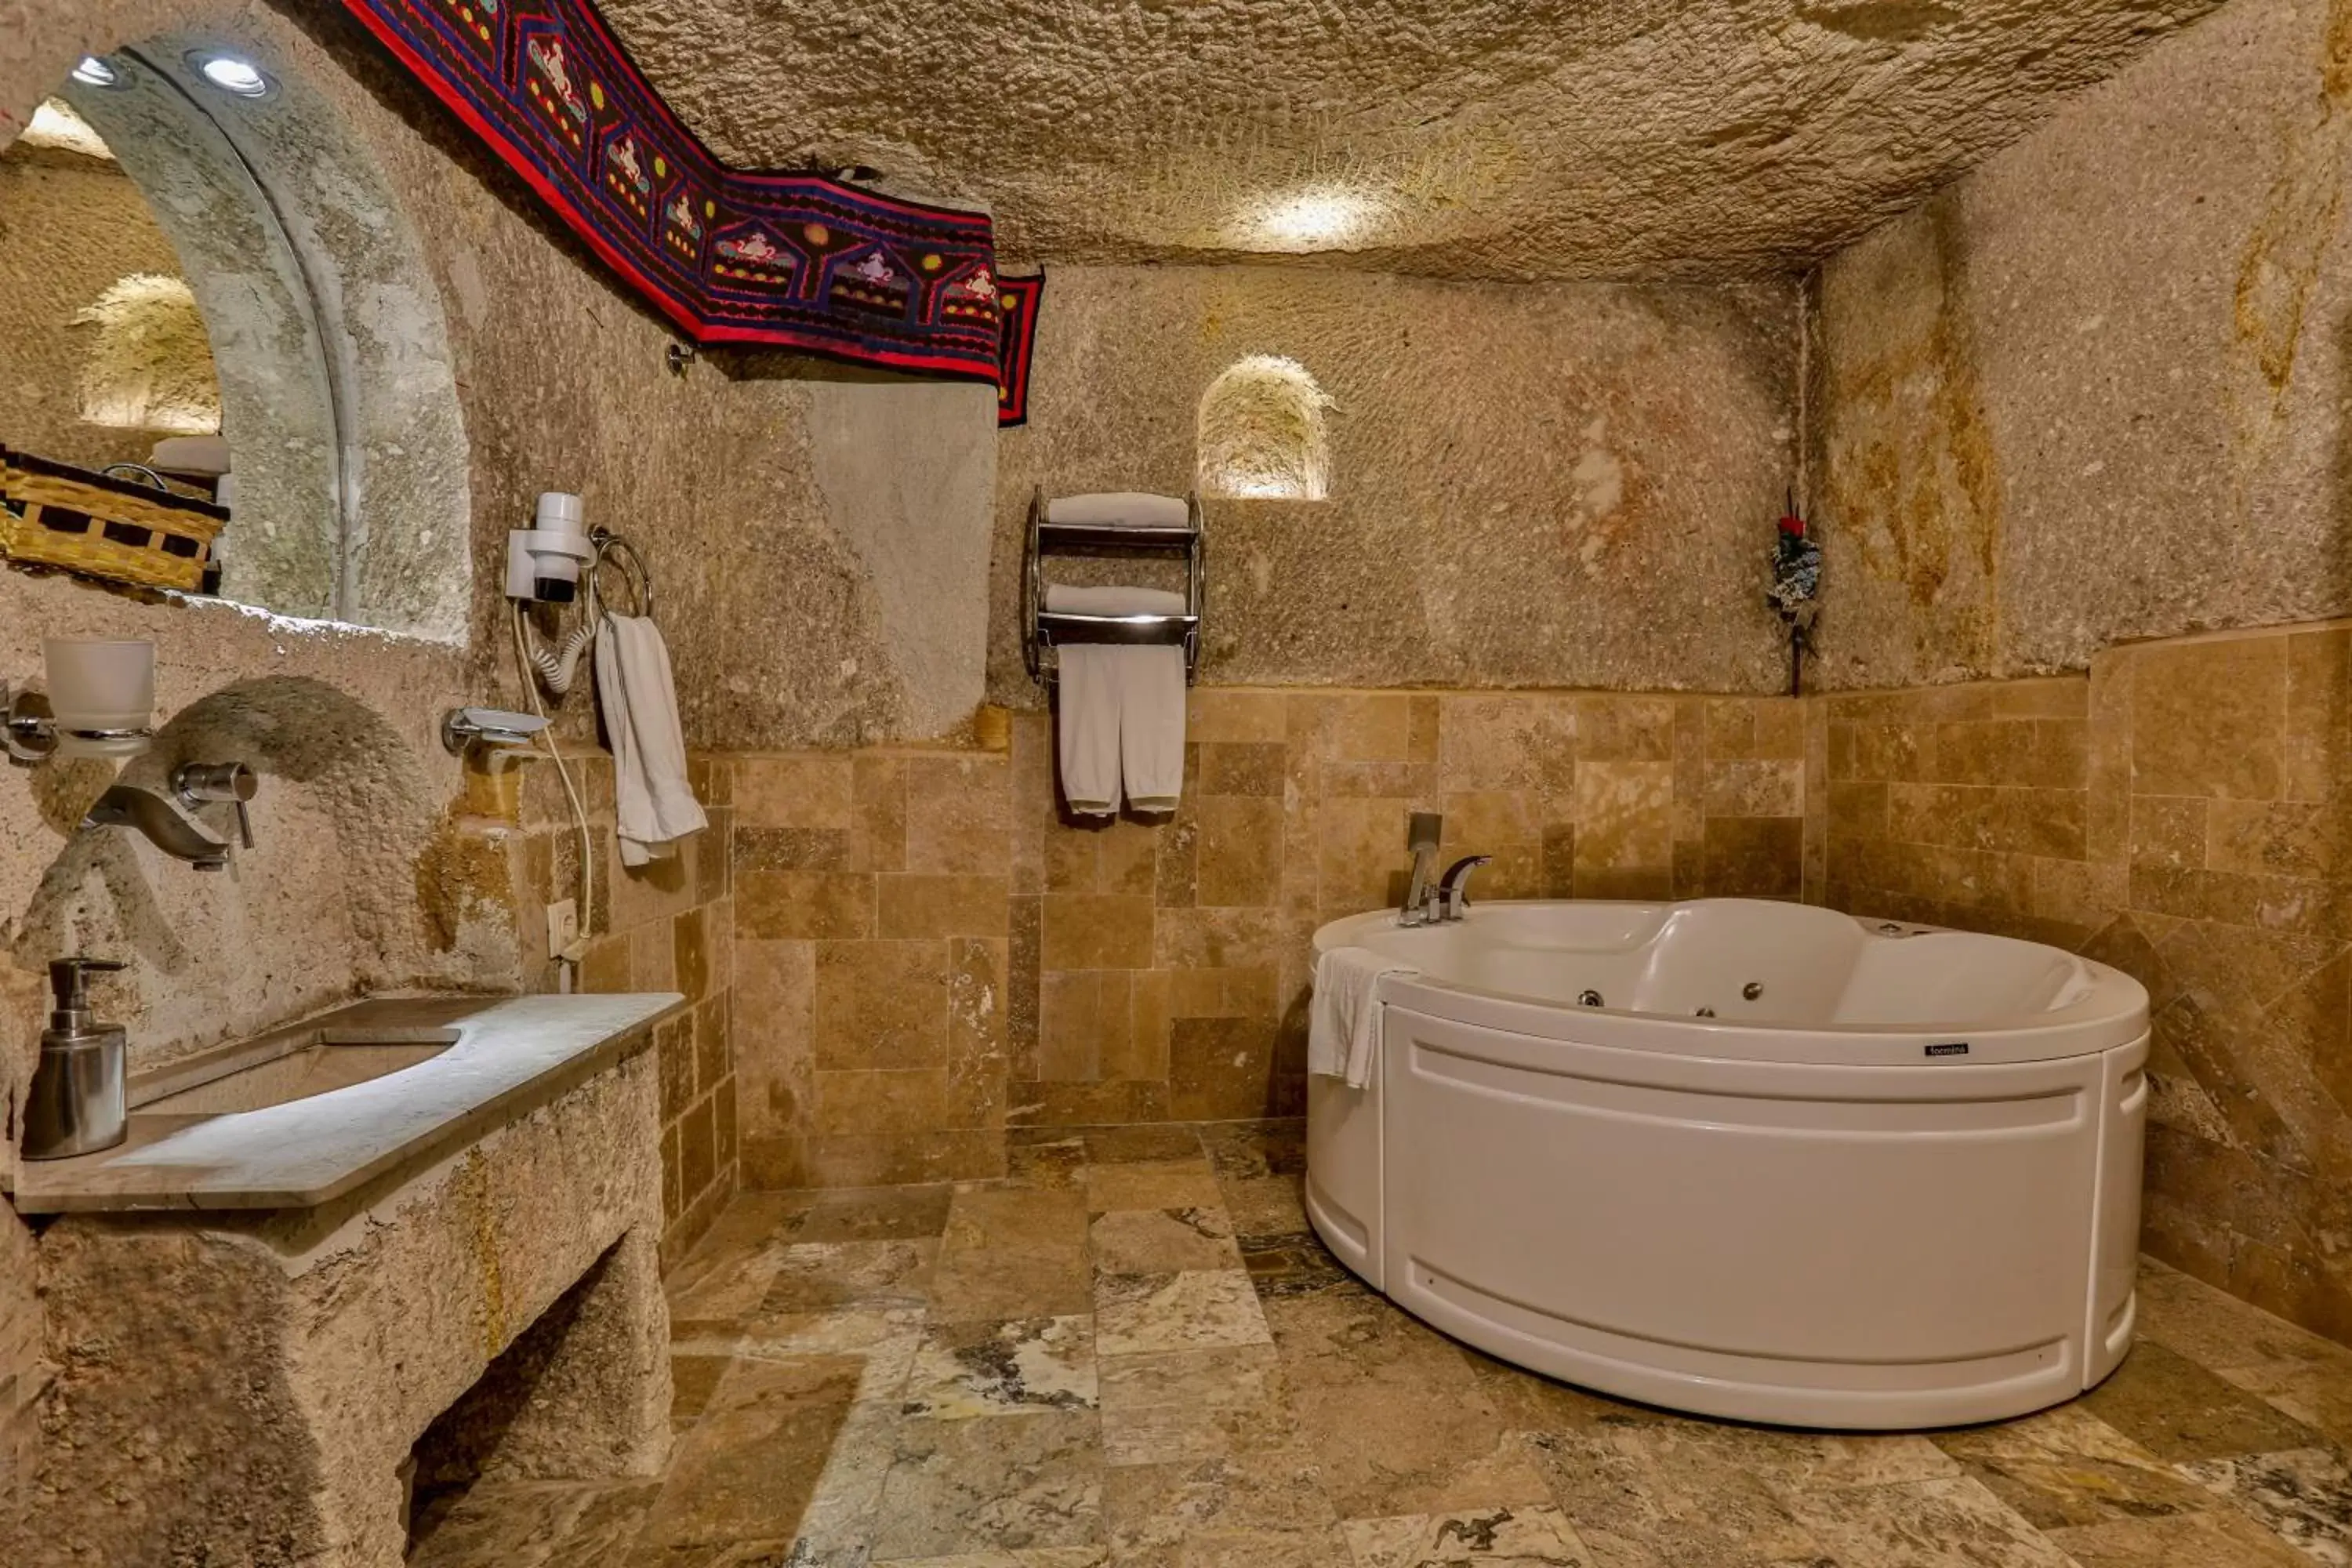 Hot Tub, Bathroom in Hidden Cave Hotel